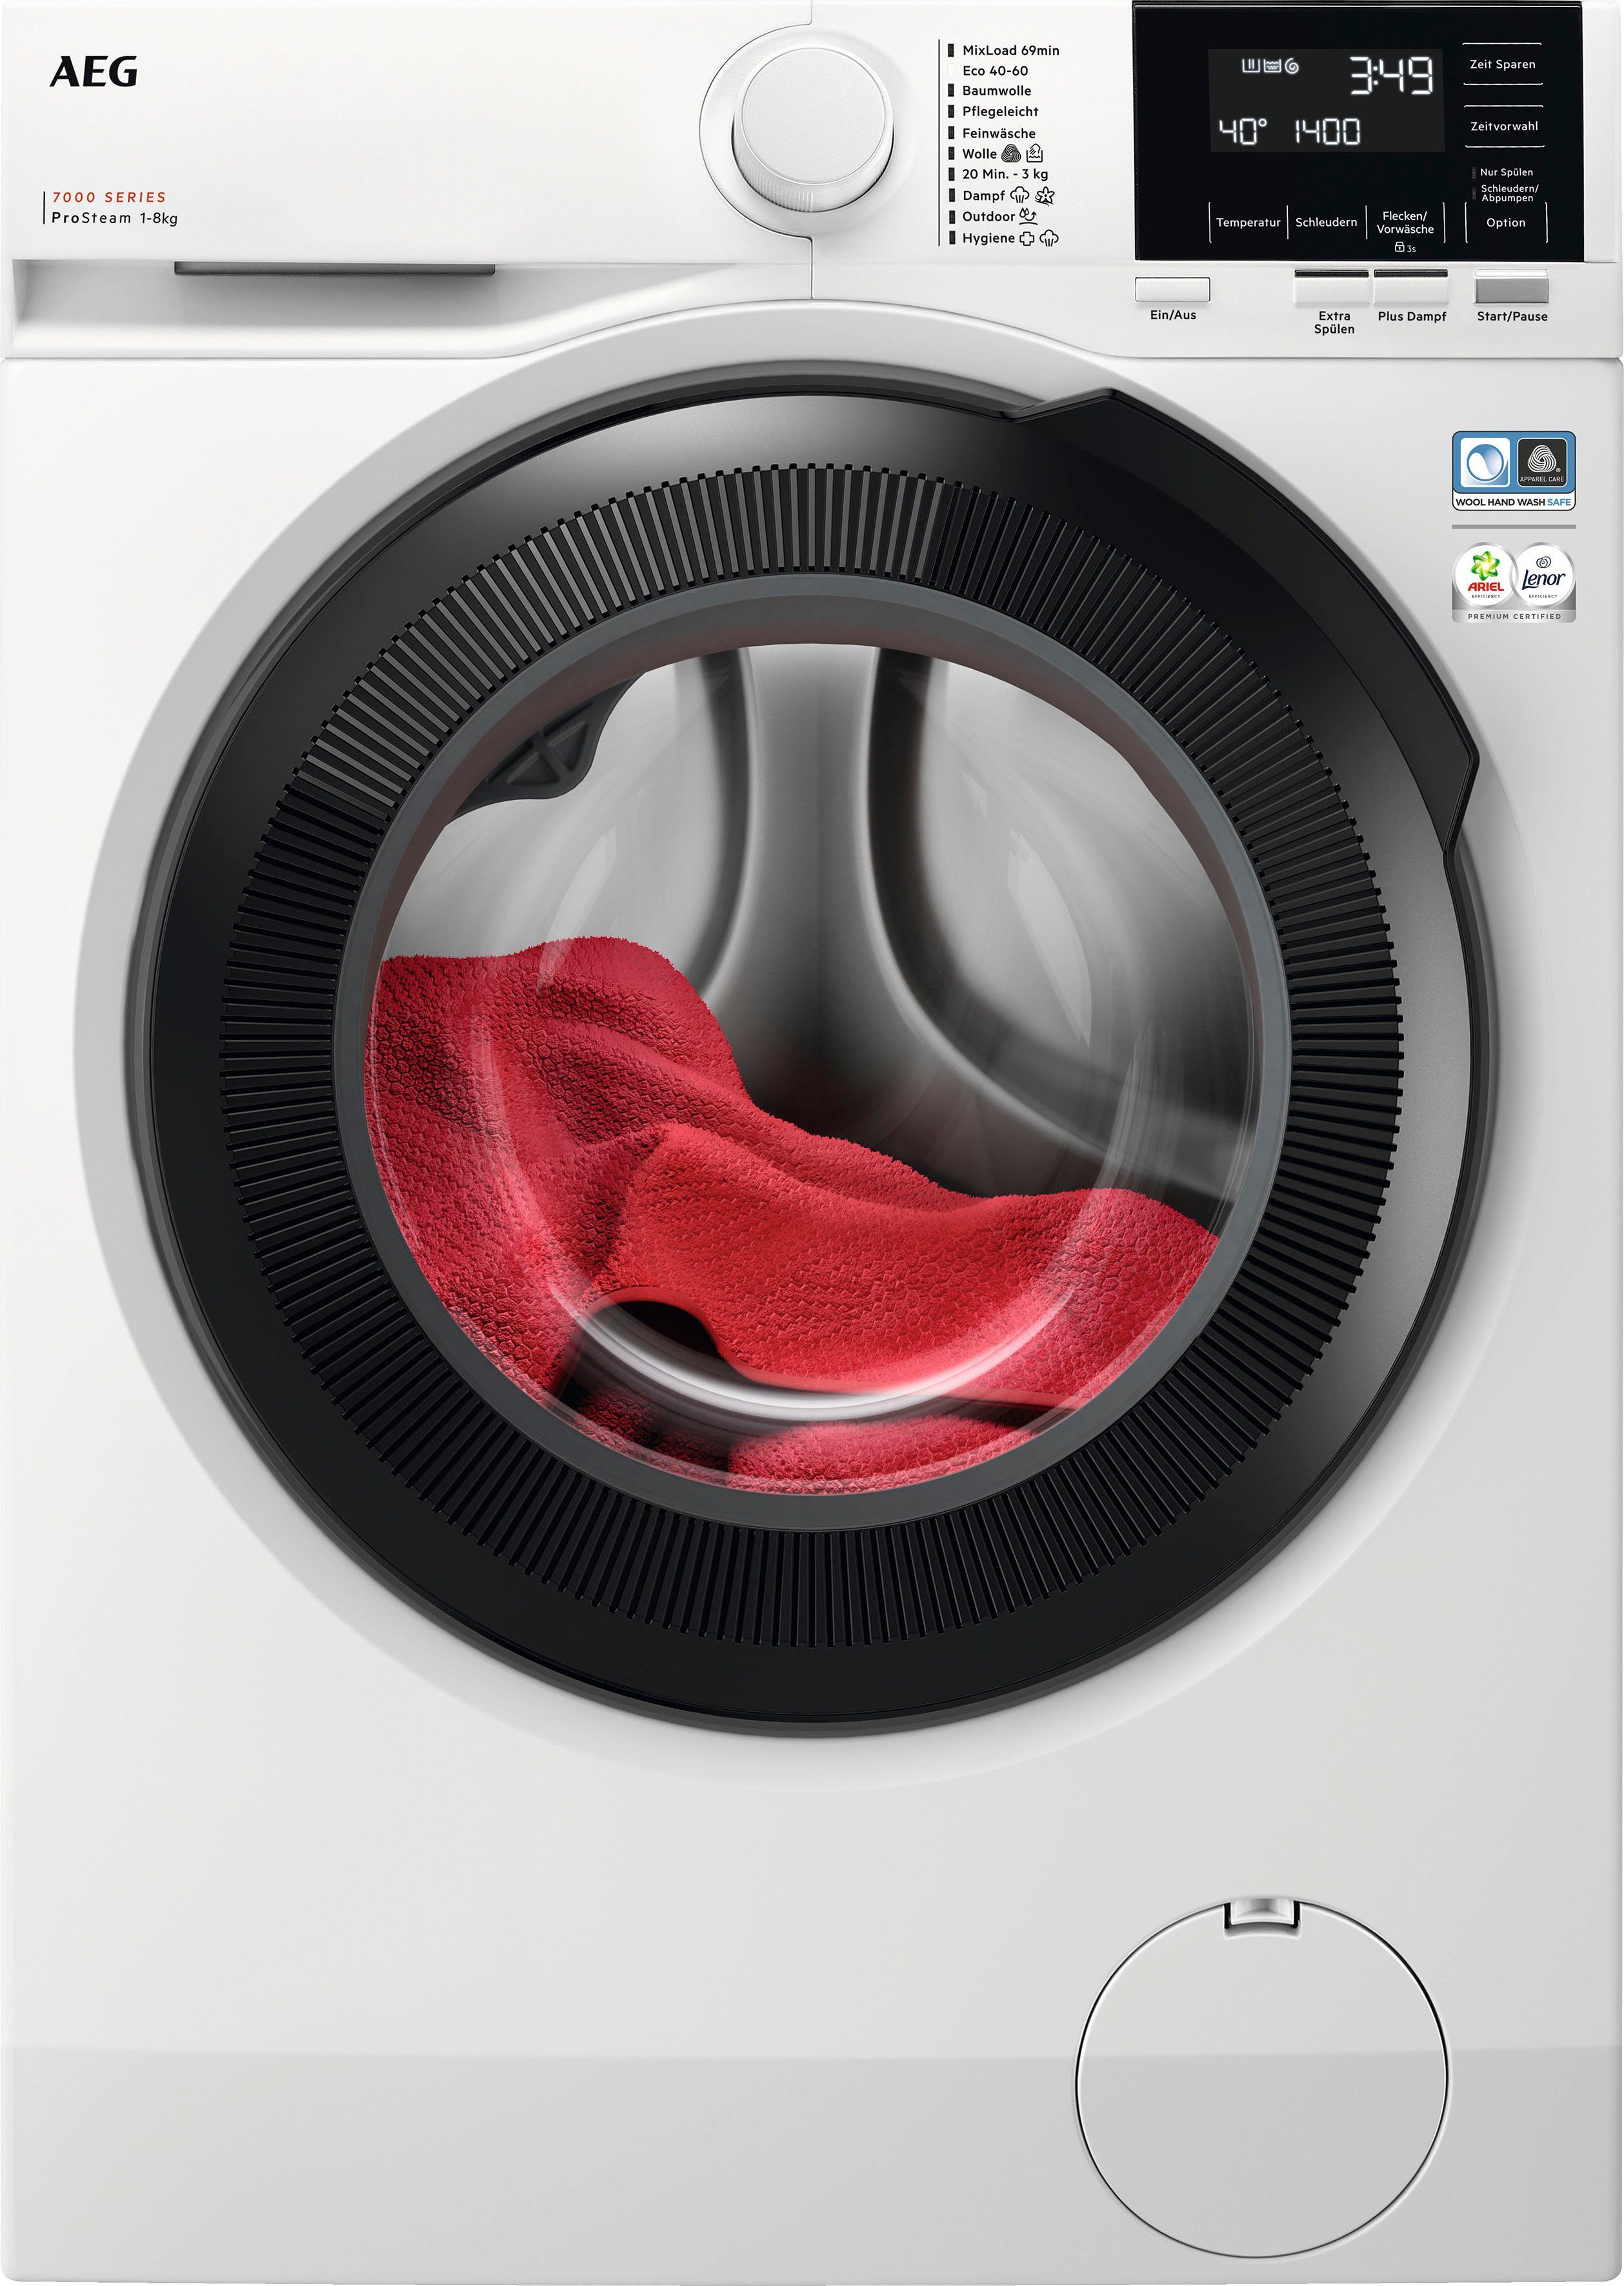 AEG Waschmaschine LR7G60480, 1400 % Wasserverbrauch - 8 weniger 96 Dampf-Programm kg, ProSteam für U/min, 7000